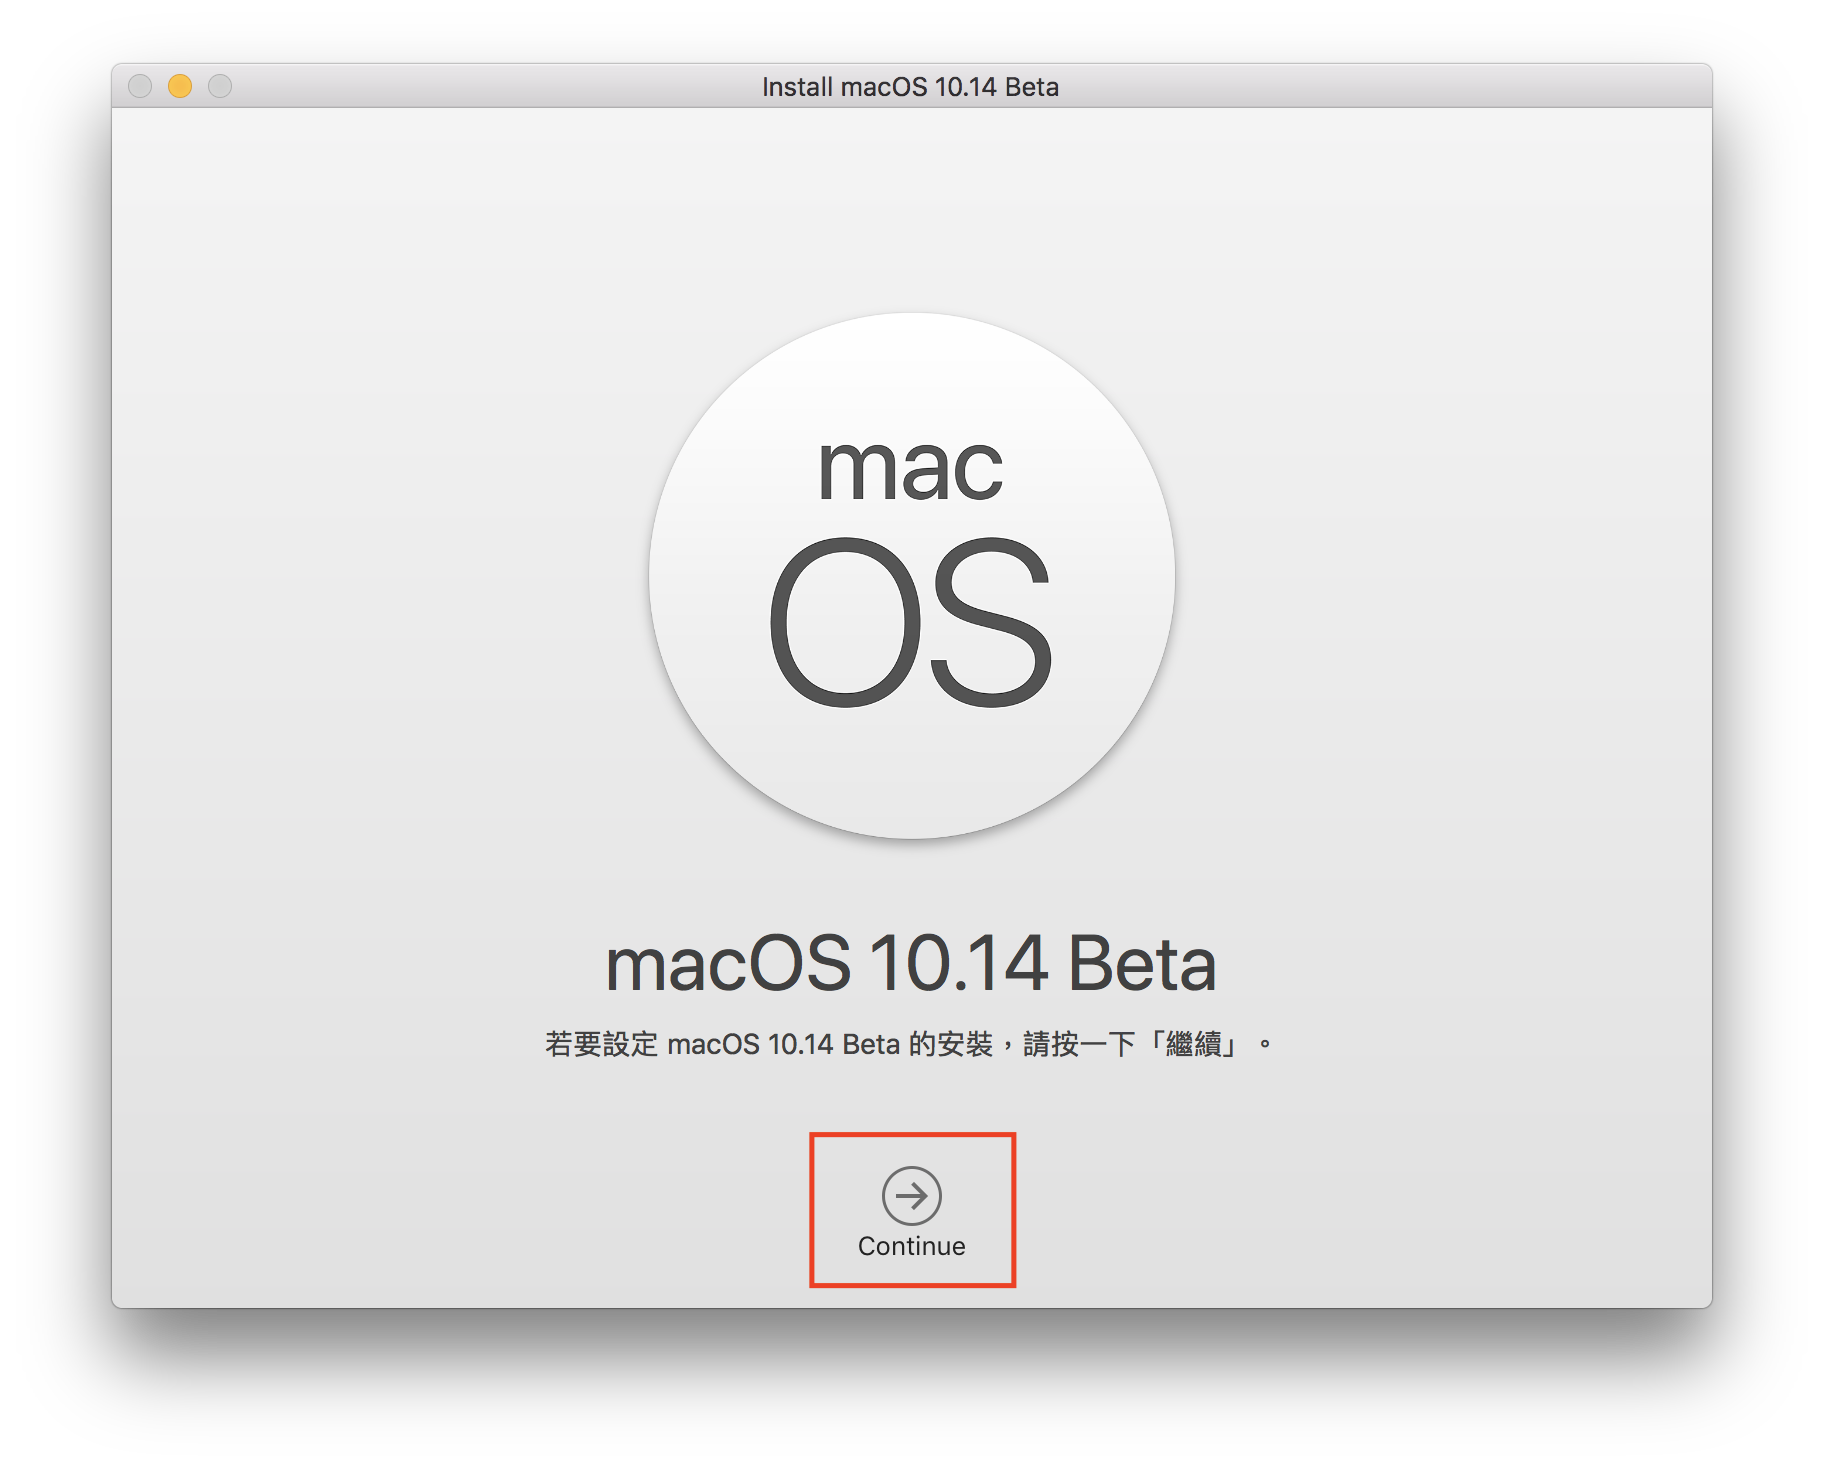 macOS 10.14 Beta 搶先升級 免開發者帳號升級教學 9